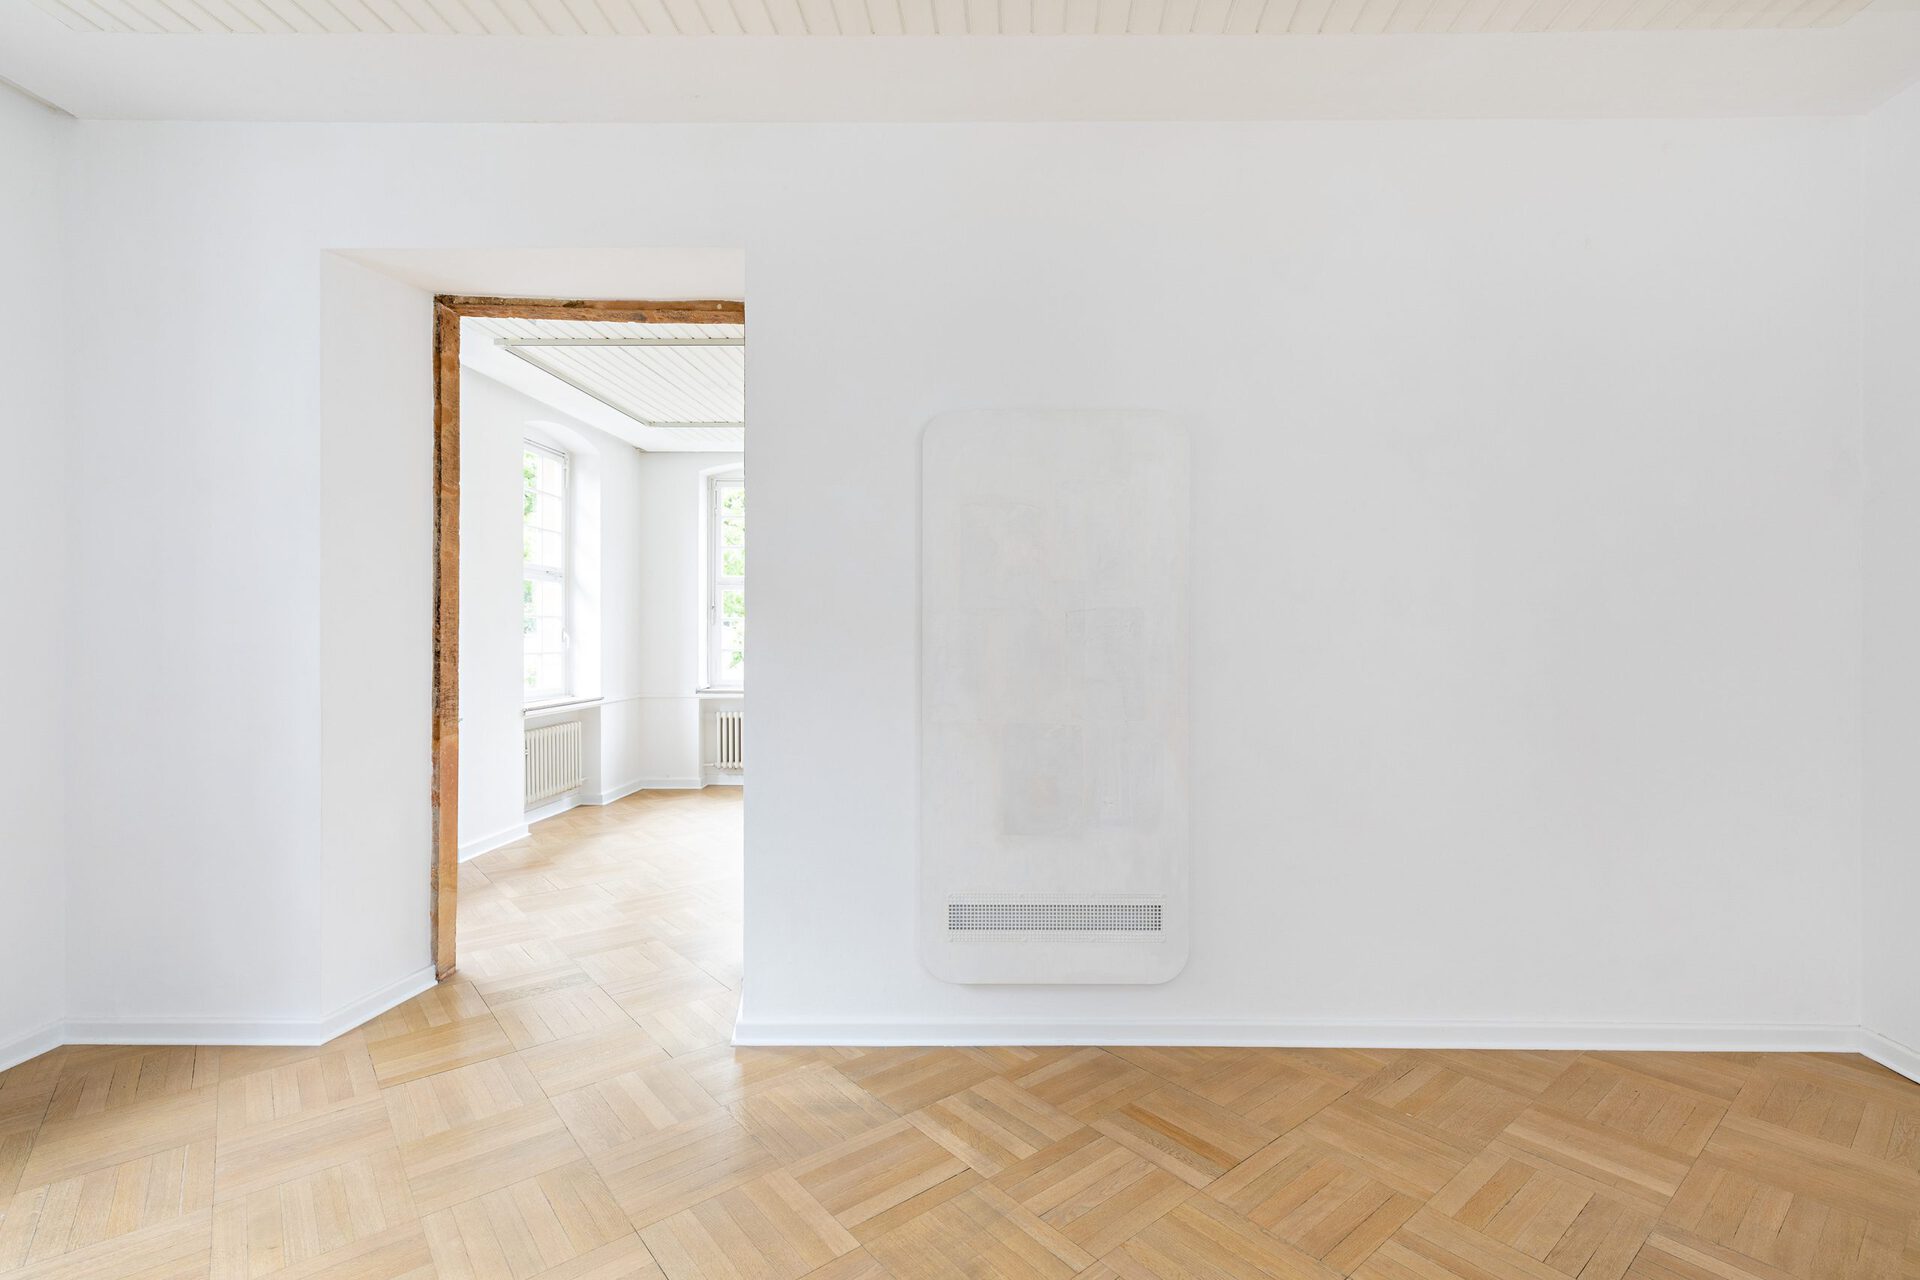 Leda Bourgogne Ghost, 2018 Ausstellungsansicht / Exhibition view  THE IMMANENT HORIZON Kunstverein Bielefeld, 2020 Photo: Fred Dott